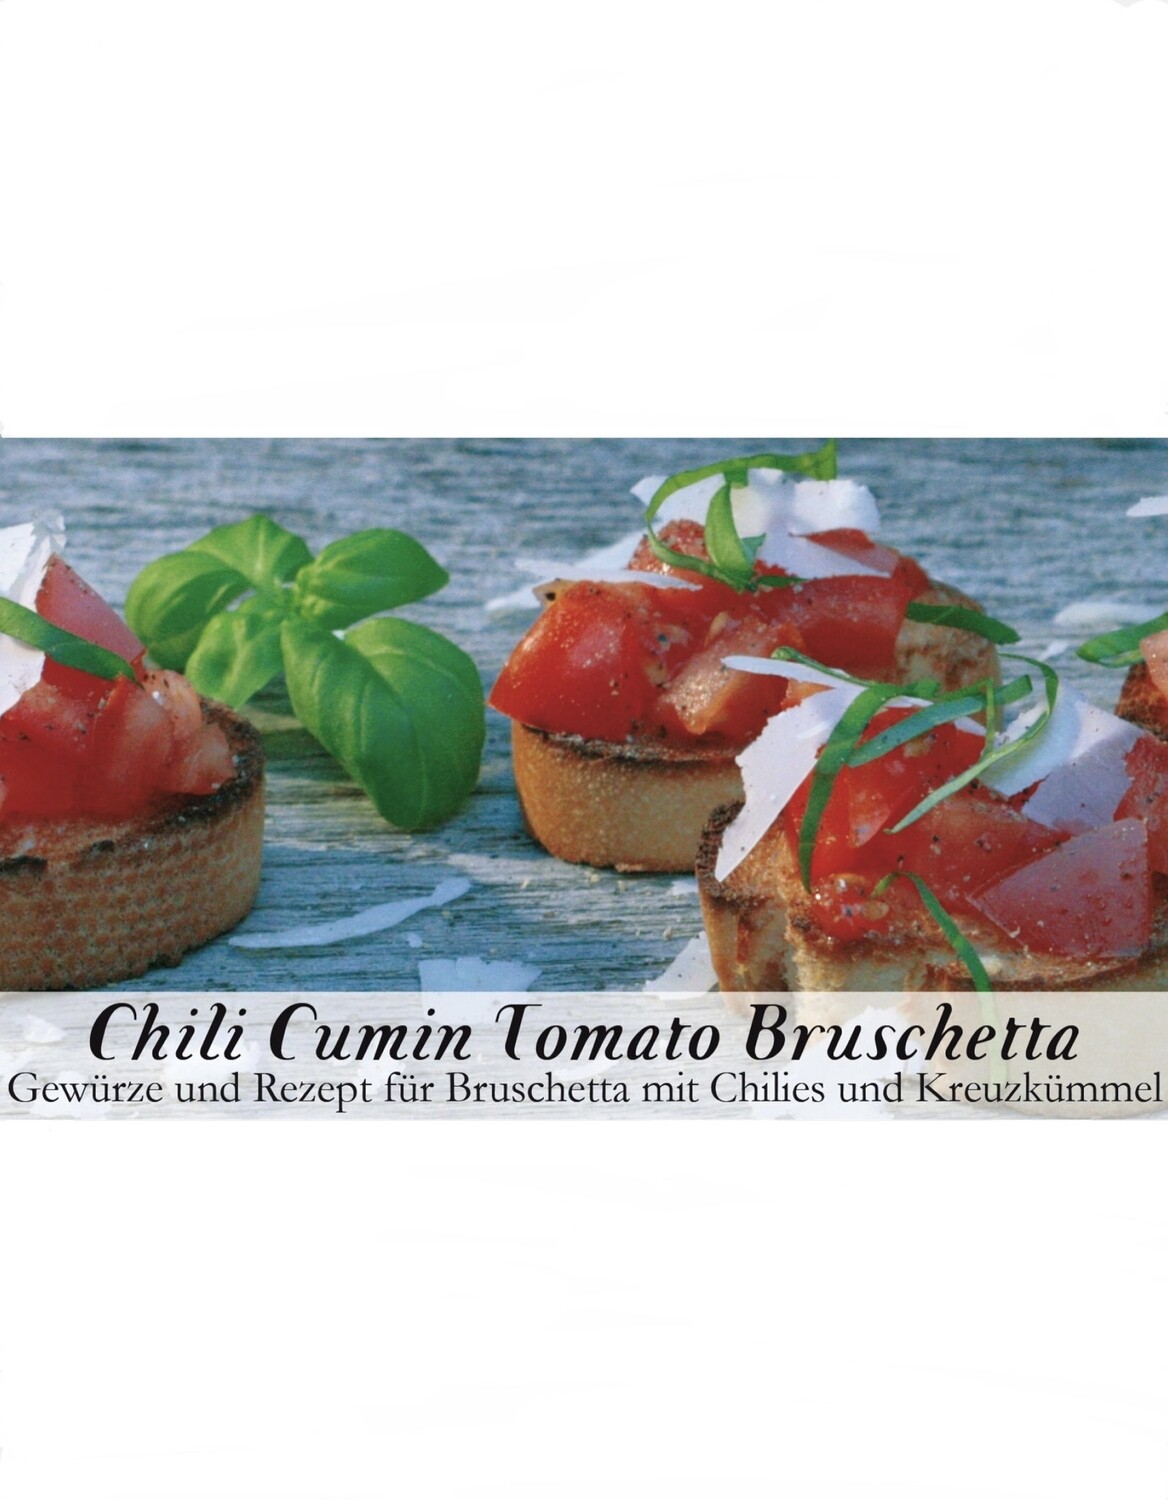 Chilli Cumin Tomato Bruschetta-Gewürzkasten